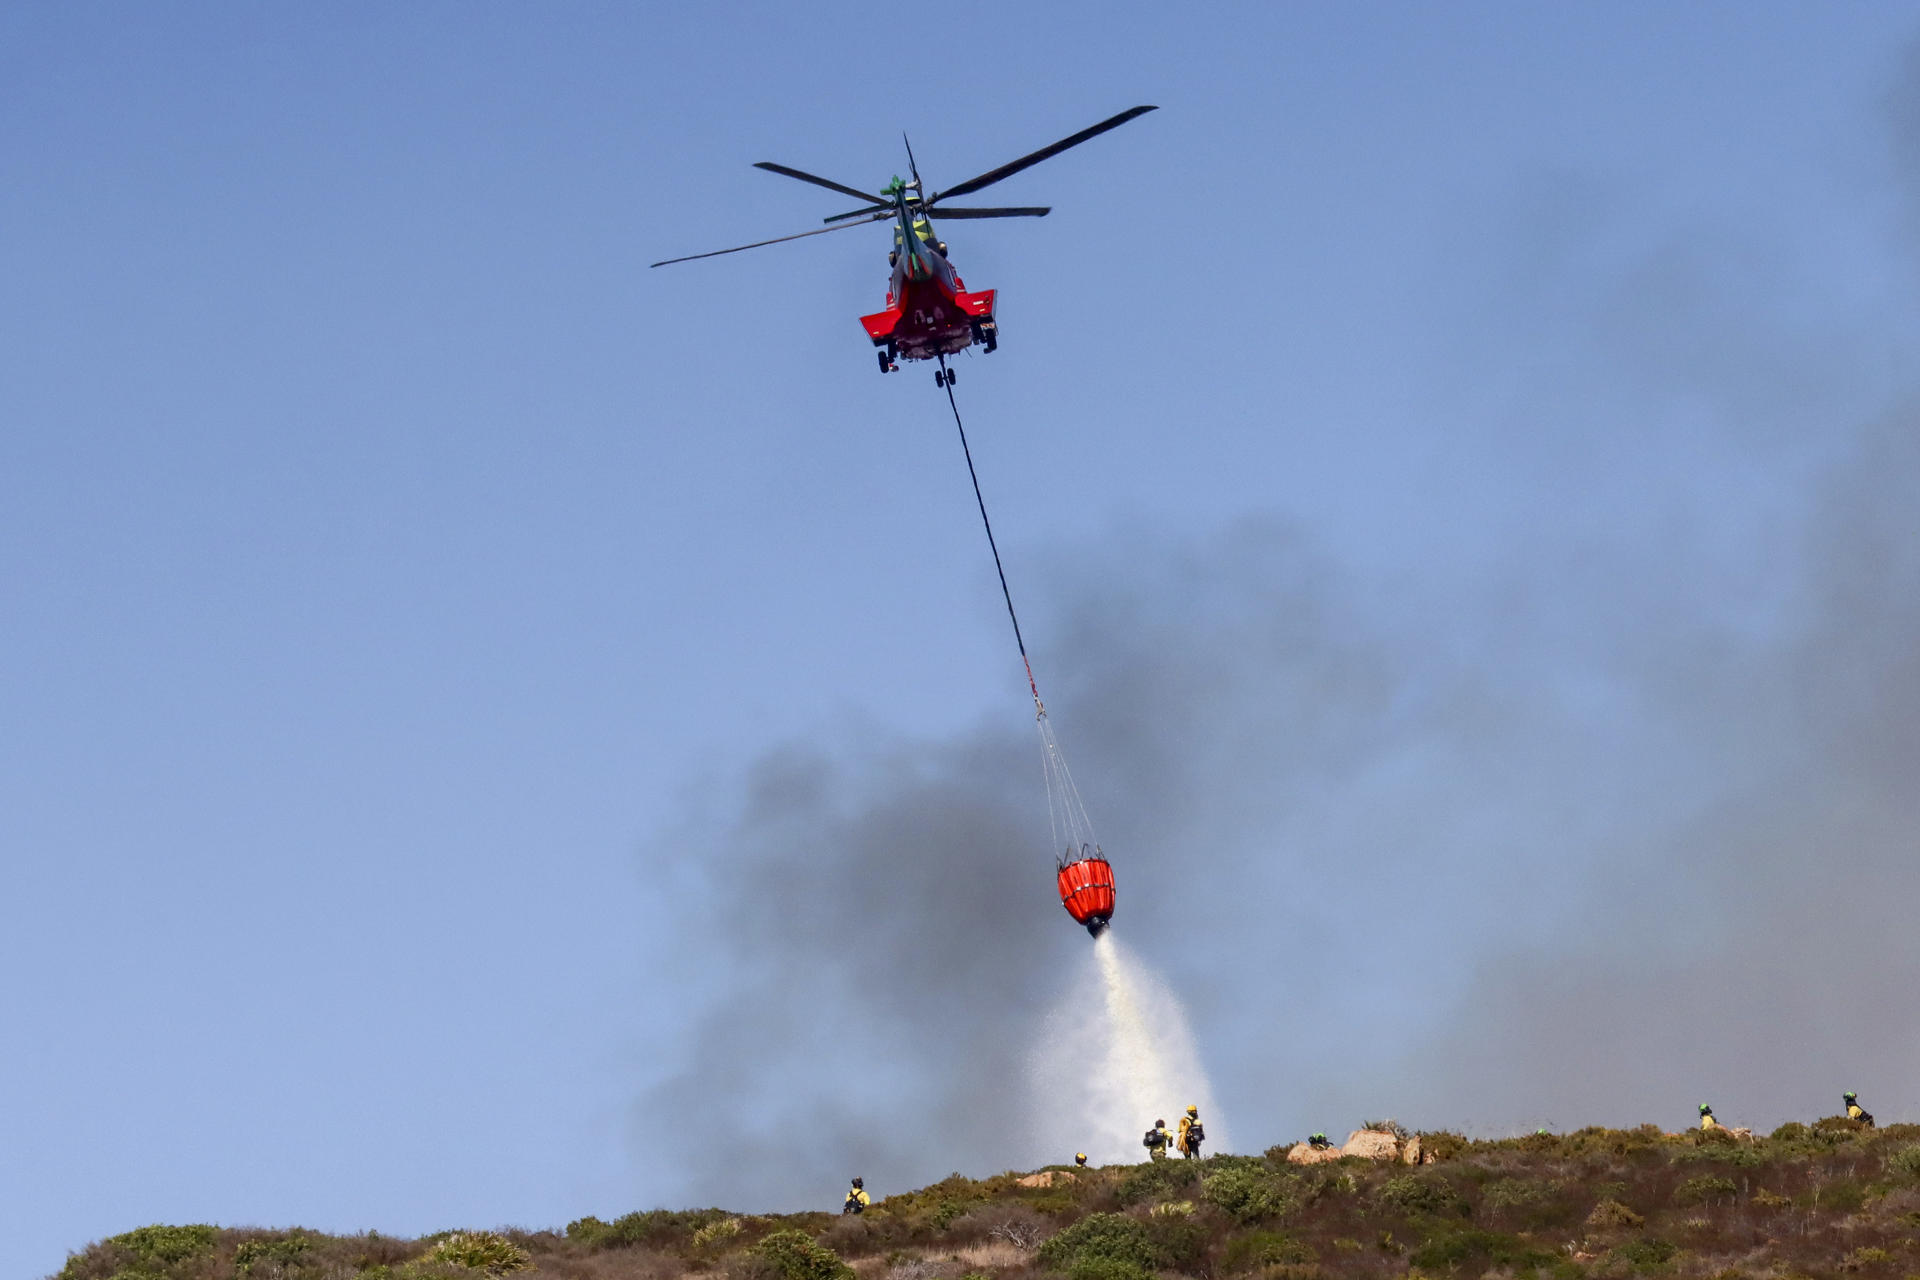 Labores de extinción de un incendio que ha sido declarado este martes en la zona de Santa Margarita en La Línea de la Concepción (Cádiz) y donde han participado varios helicópteros e hidroaviones. EFE/A.Carrasco Ragel.
